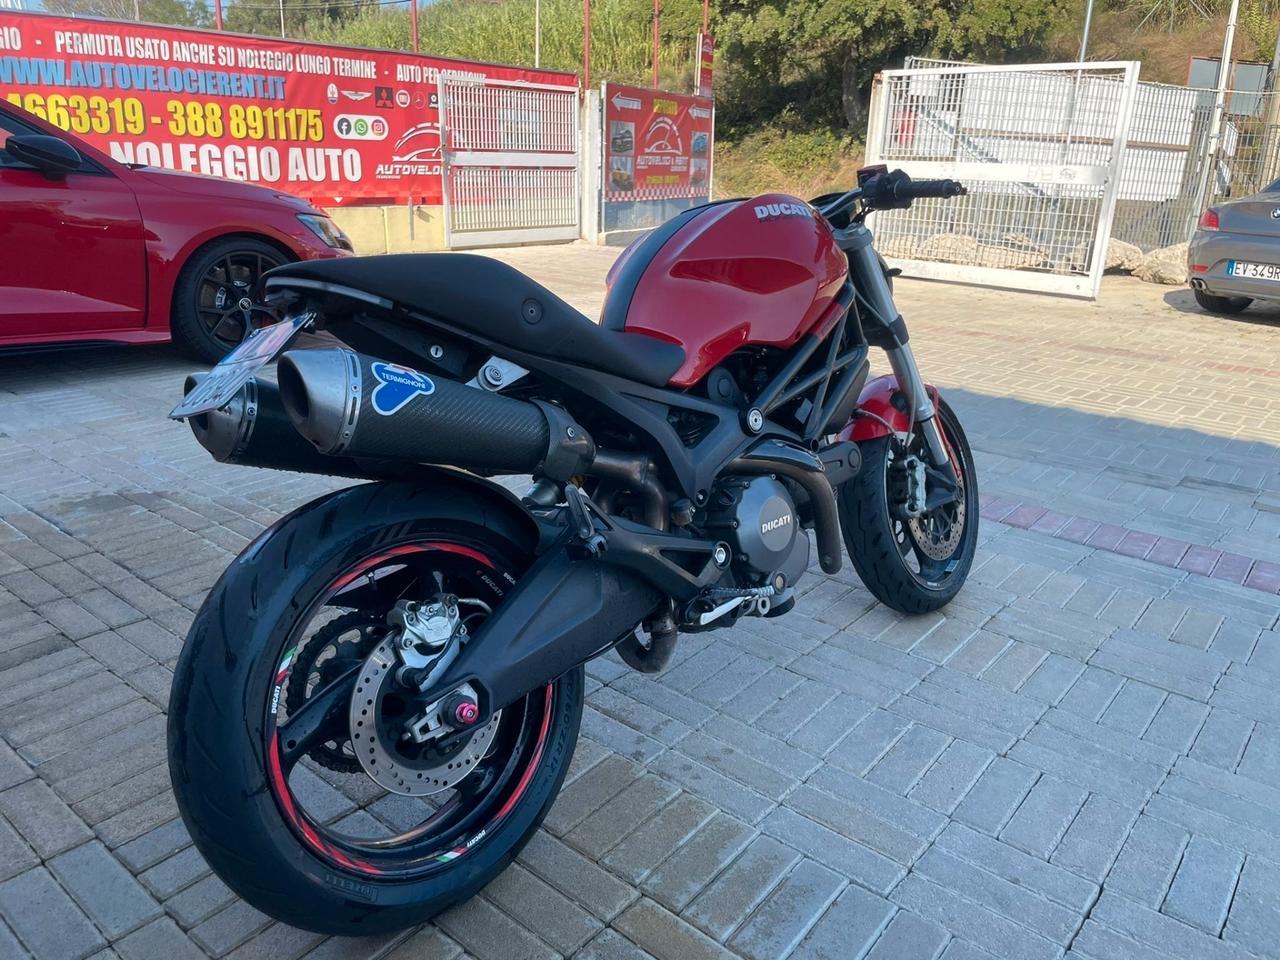 Ducati monster 696